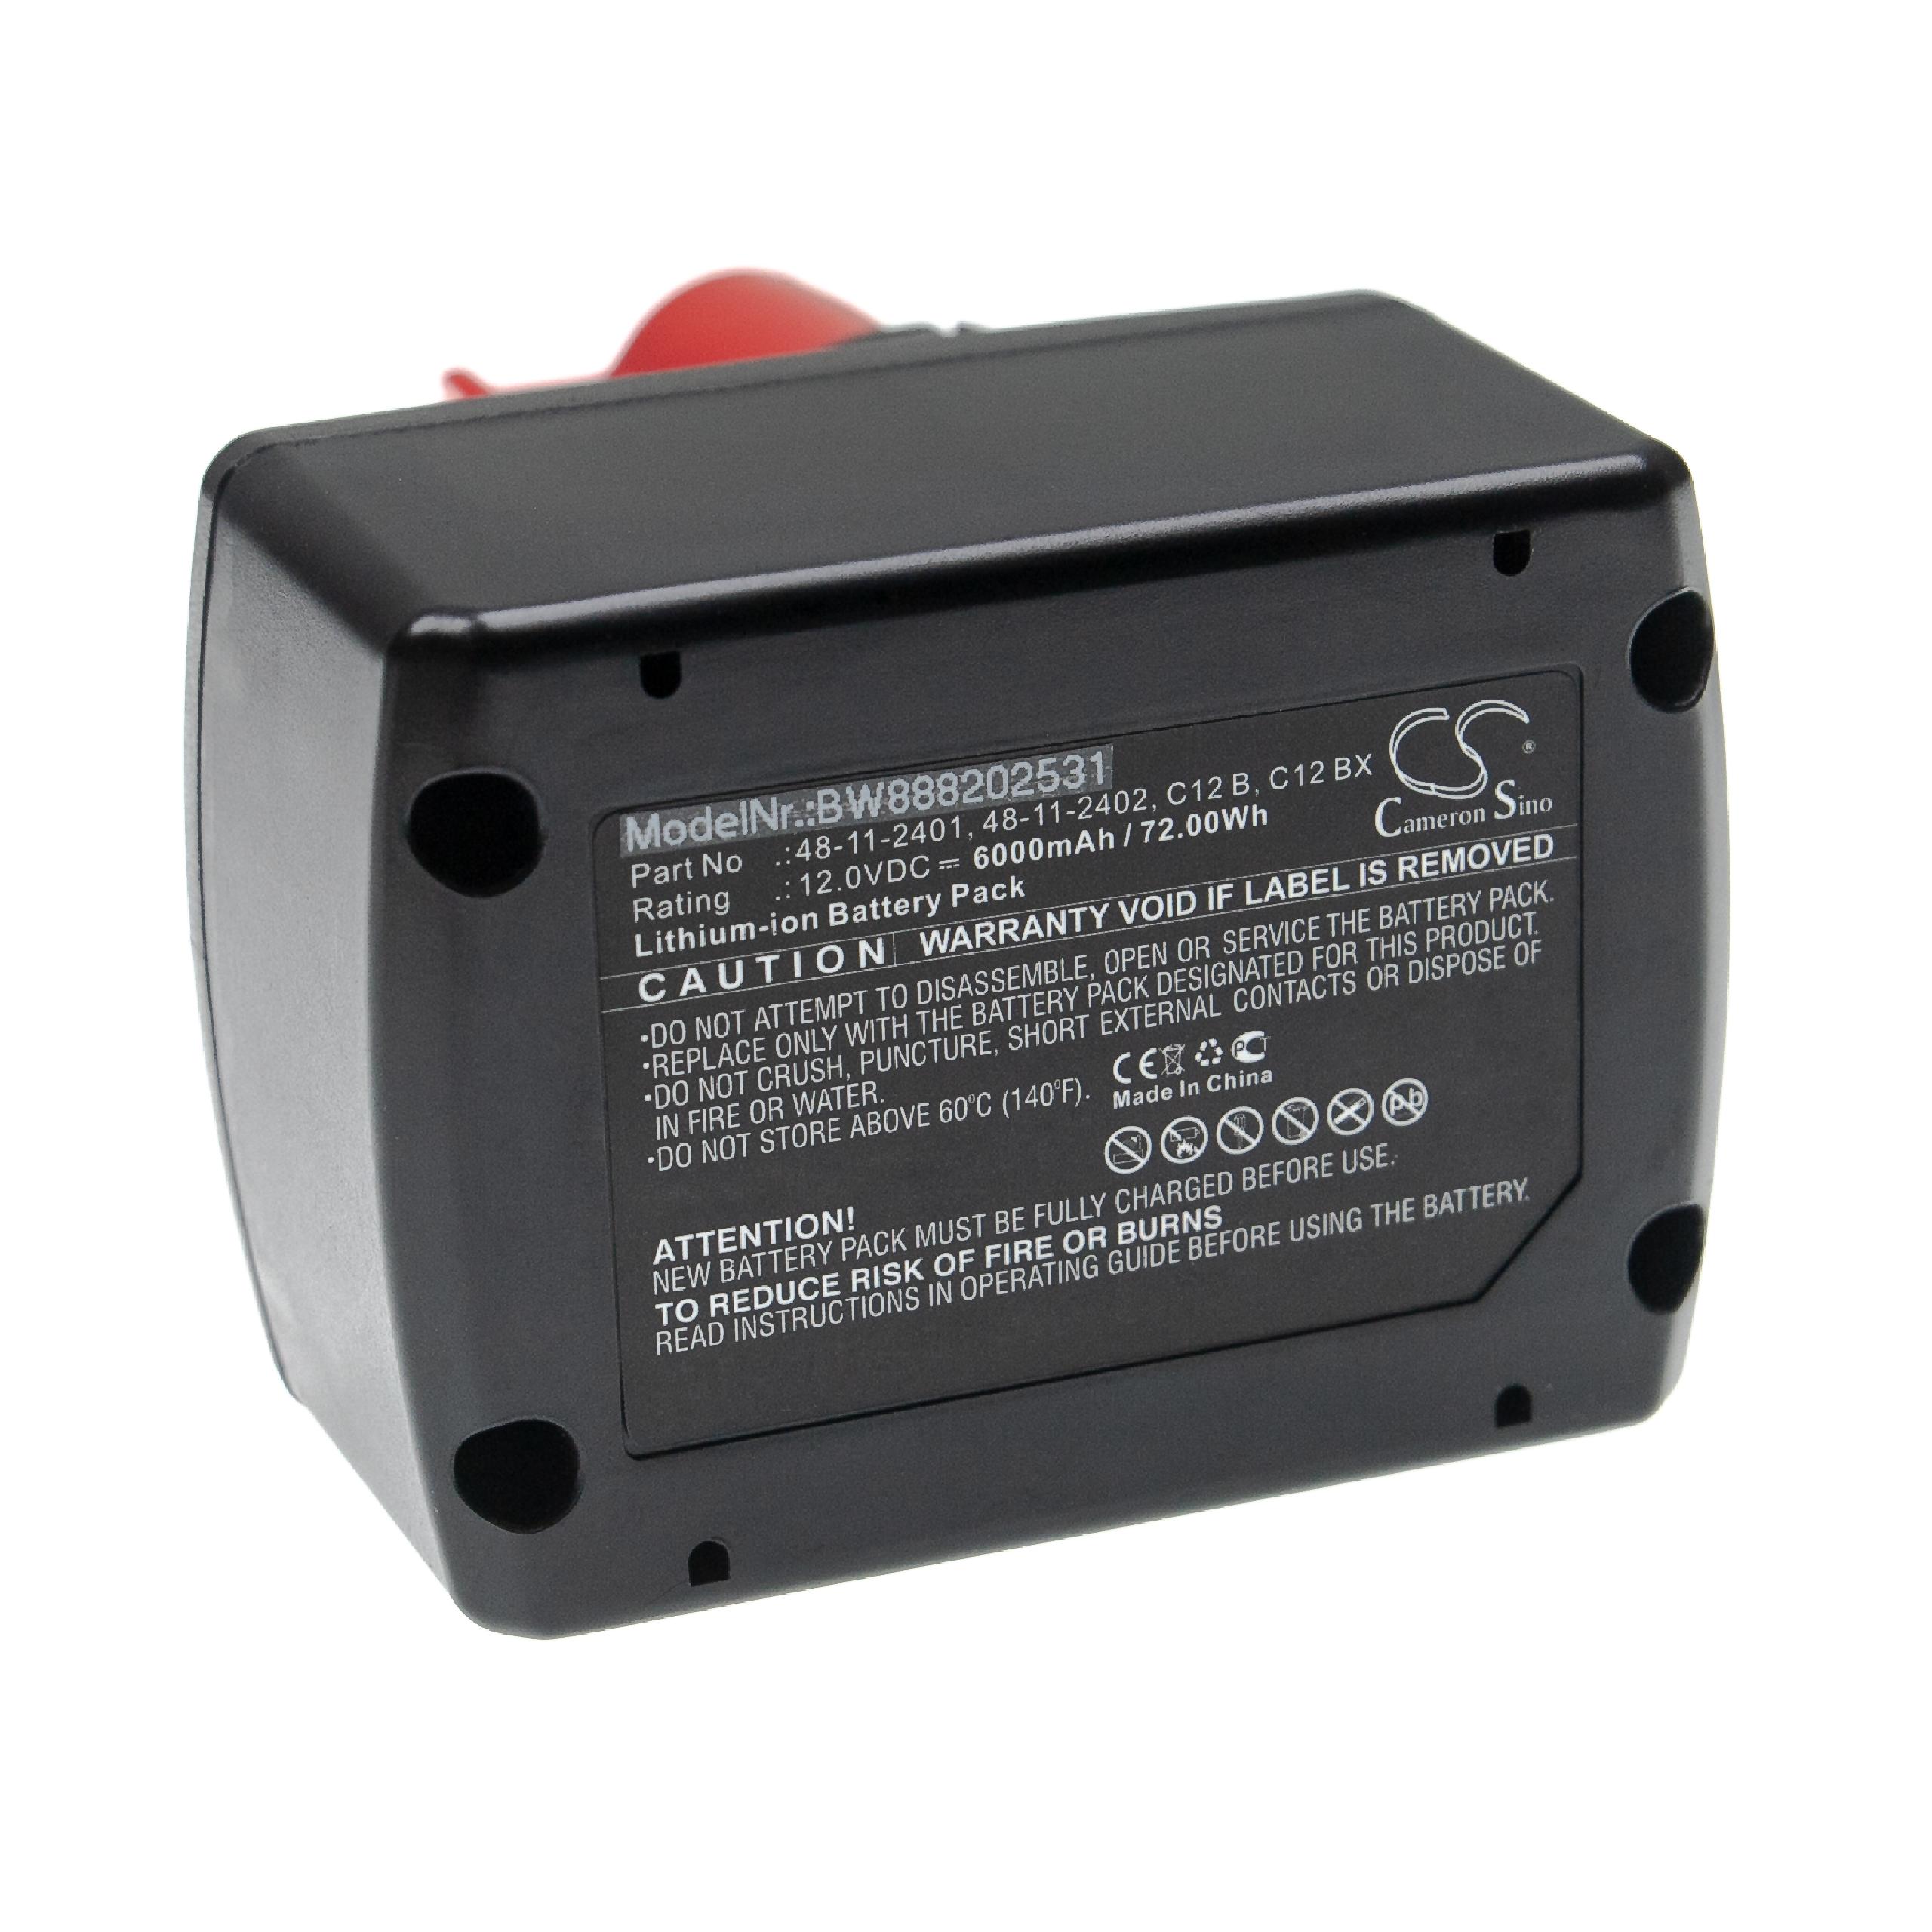 Batterie remplace Milwaukee 48112401, 48-11-2402, 48-11-2401 pour outil électrique - 6000 mAh, 12 V, Li-ion